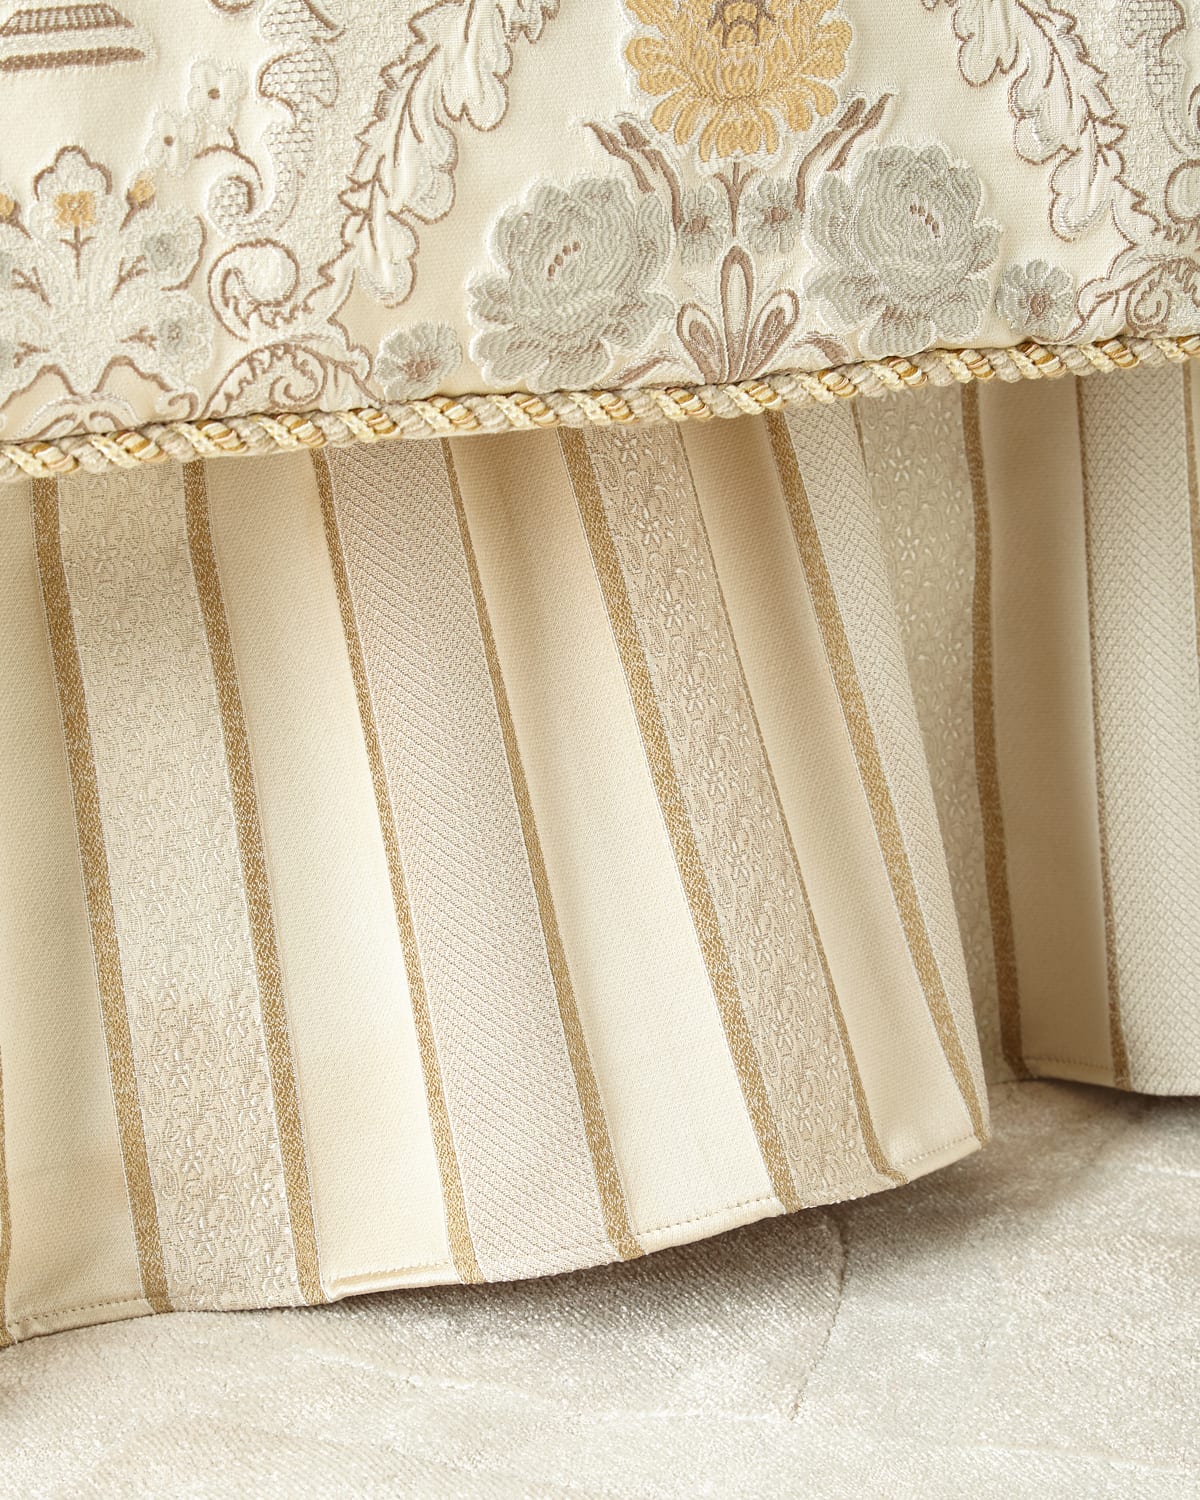 Ruffled Queen Comforter Bedding | horchow.com